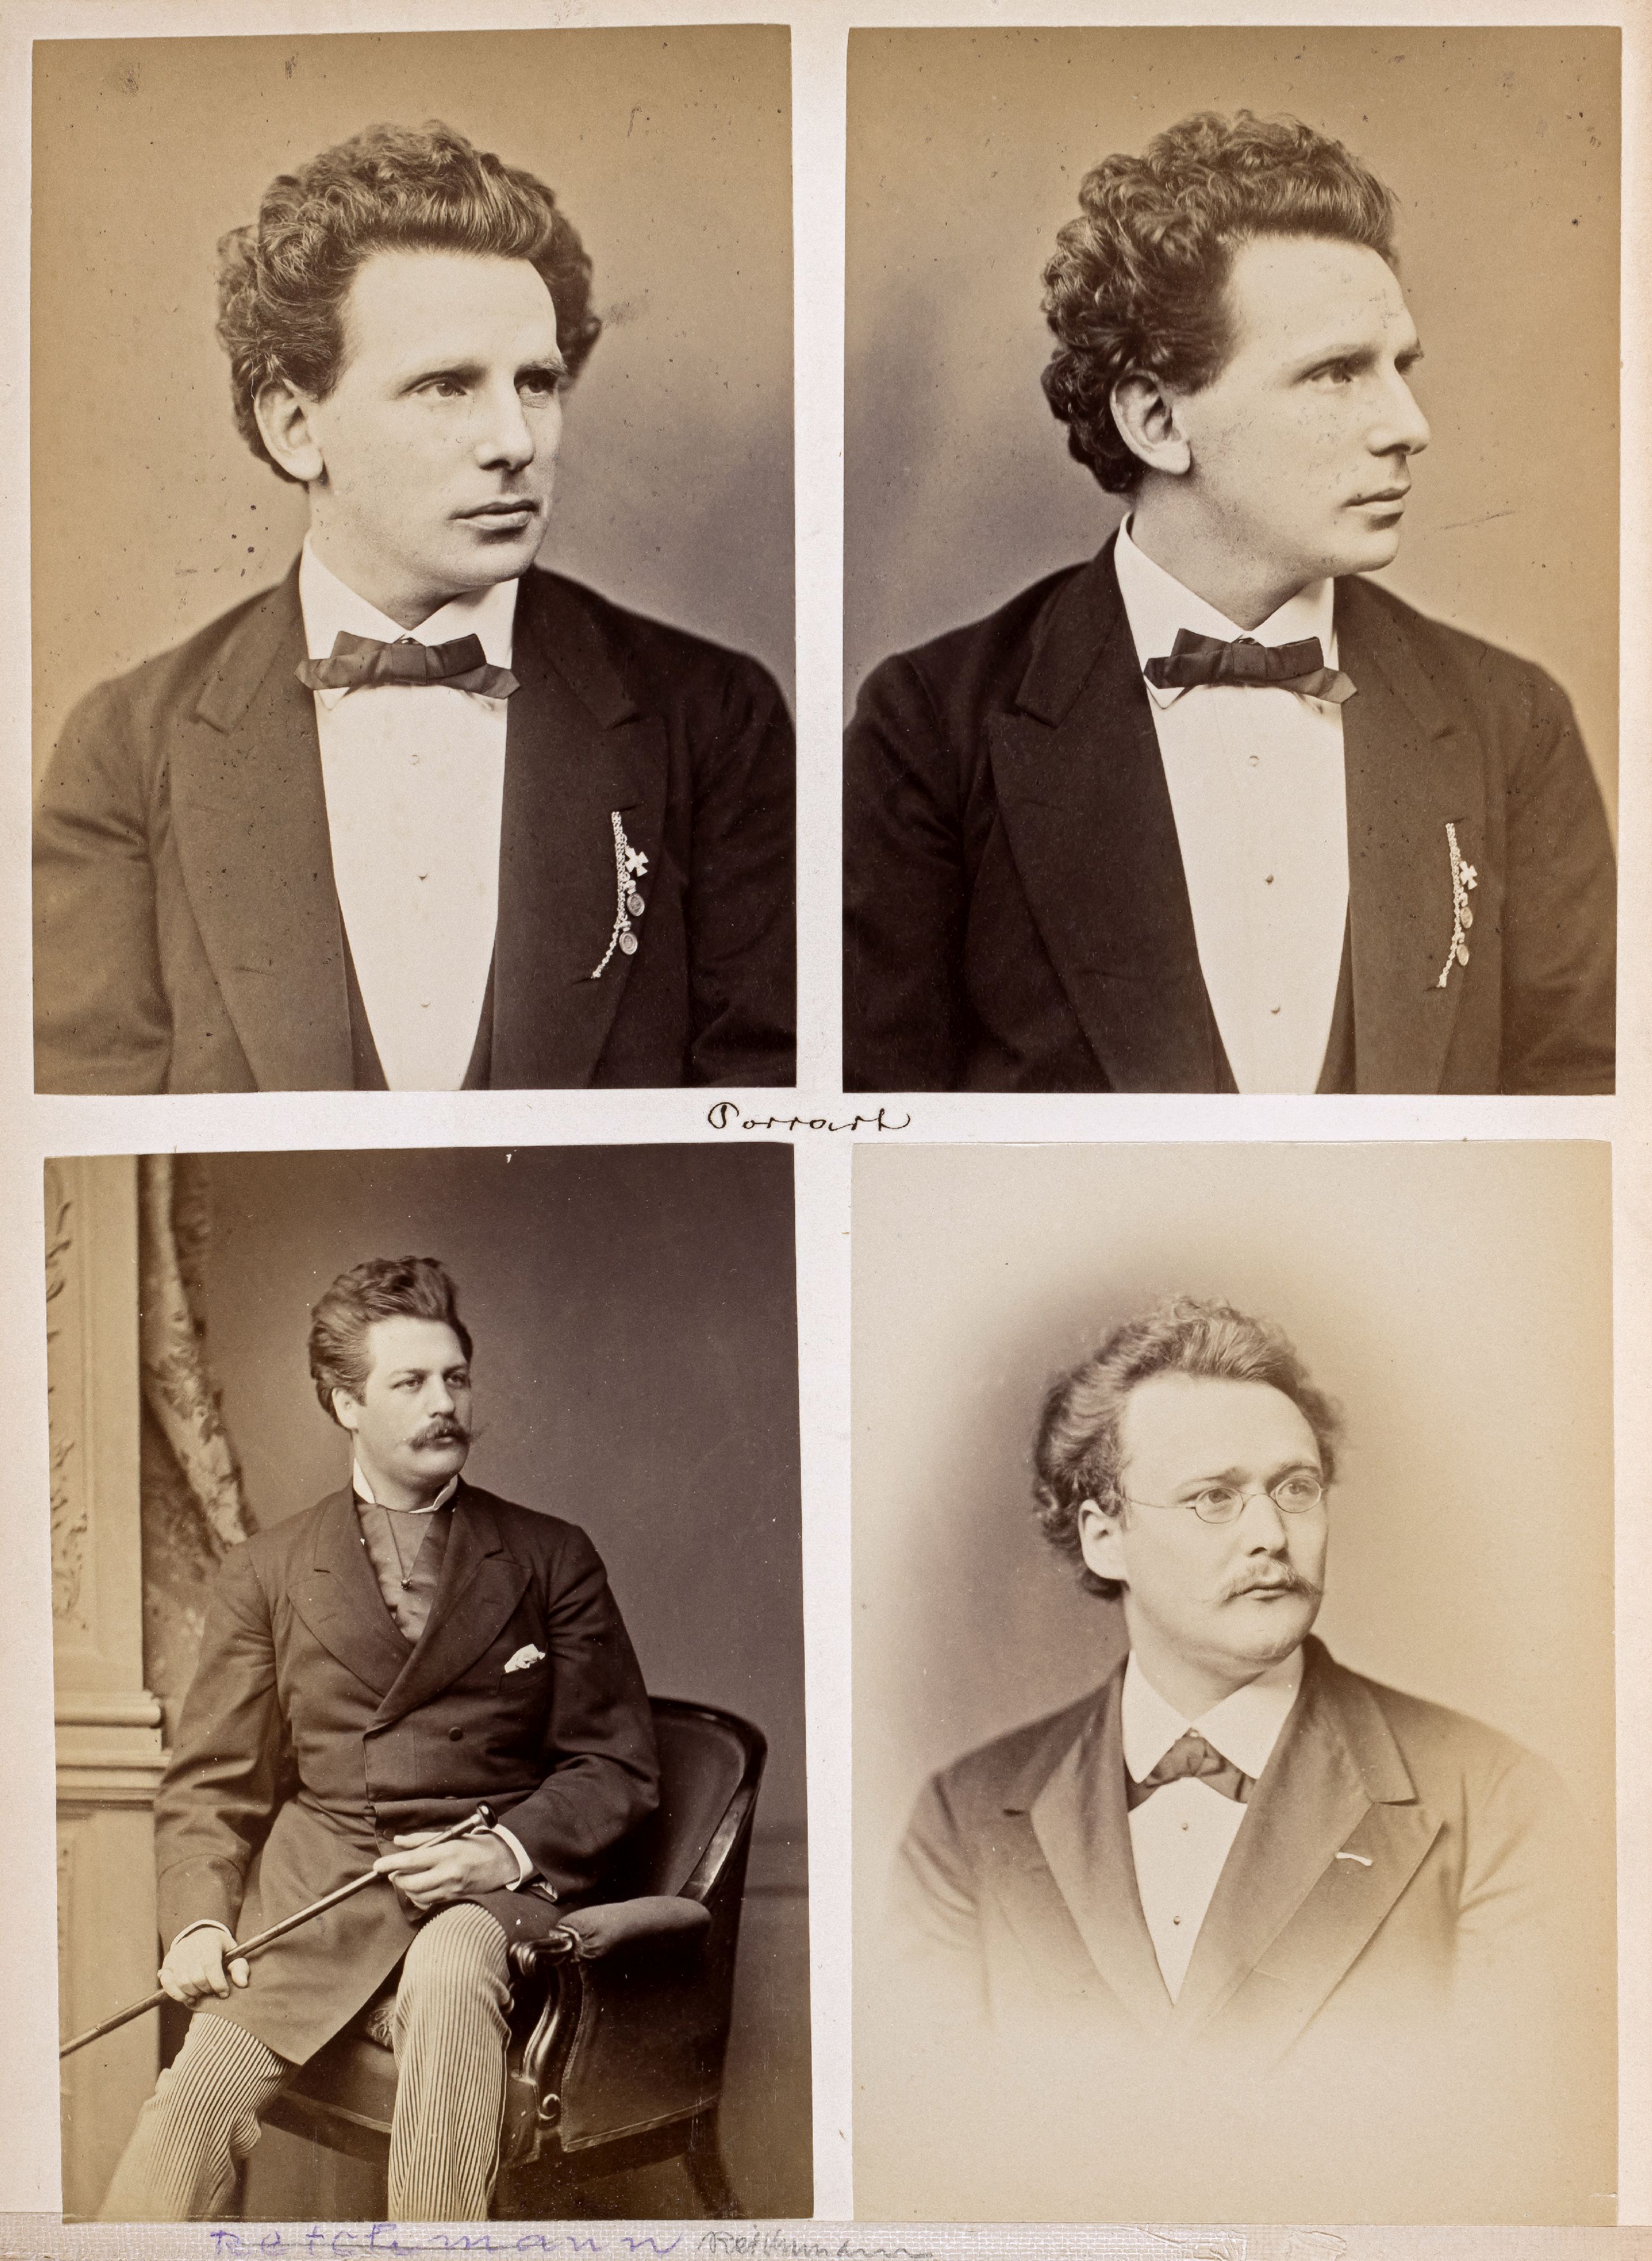 FOTOGRAFIE | Hanfstaengl, Franz | 1807 Baiernrain bei Tölz - 1877 München - Bild 16 aus 25